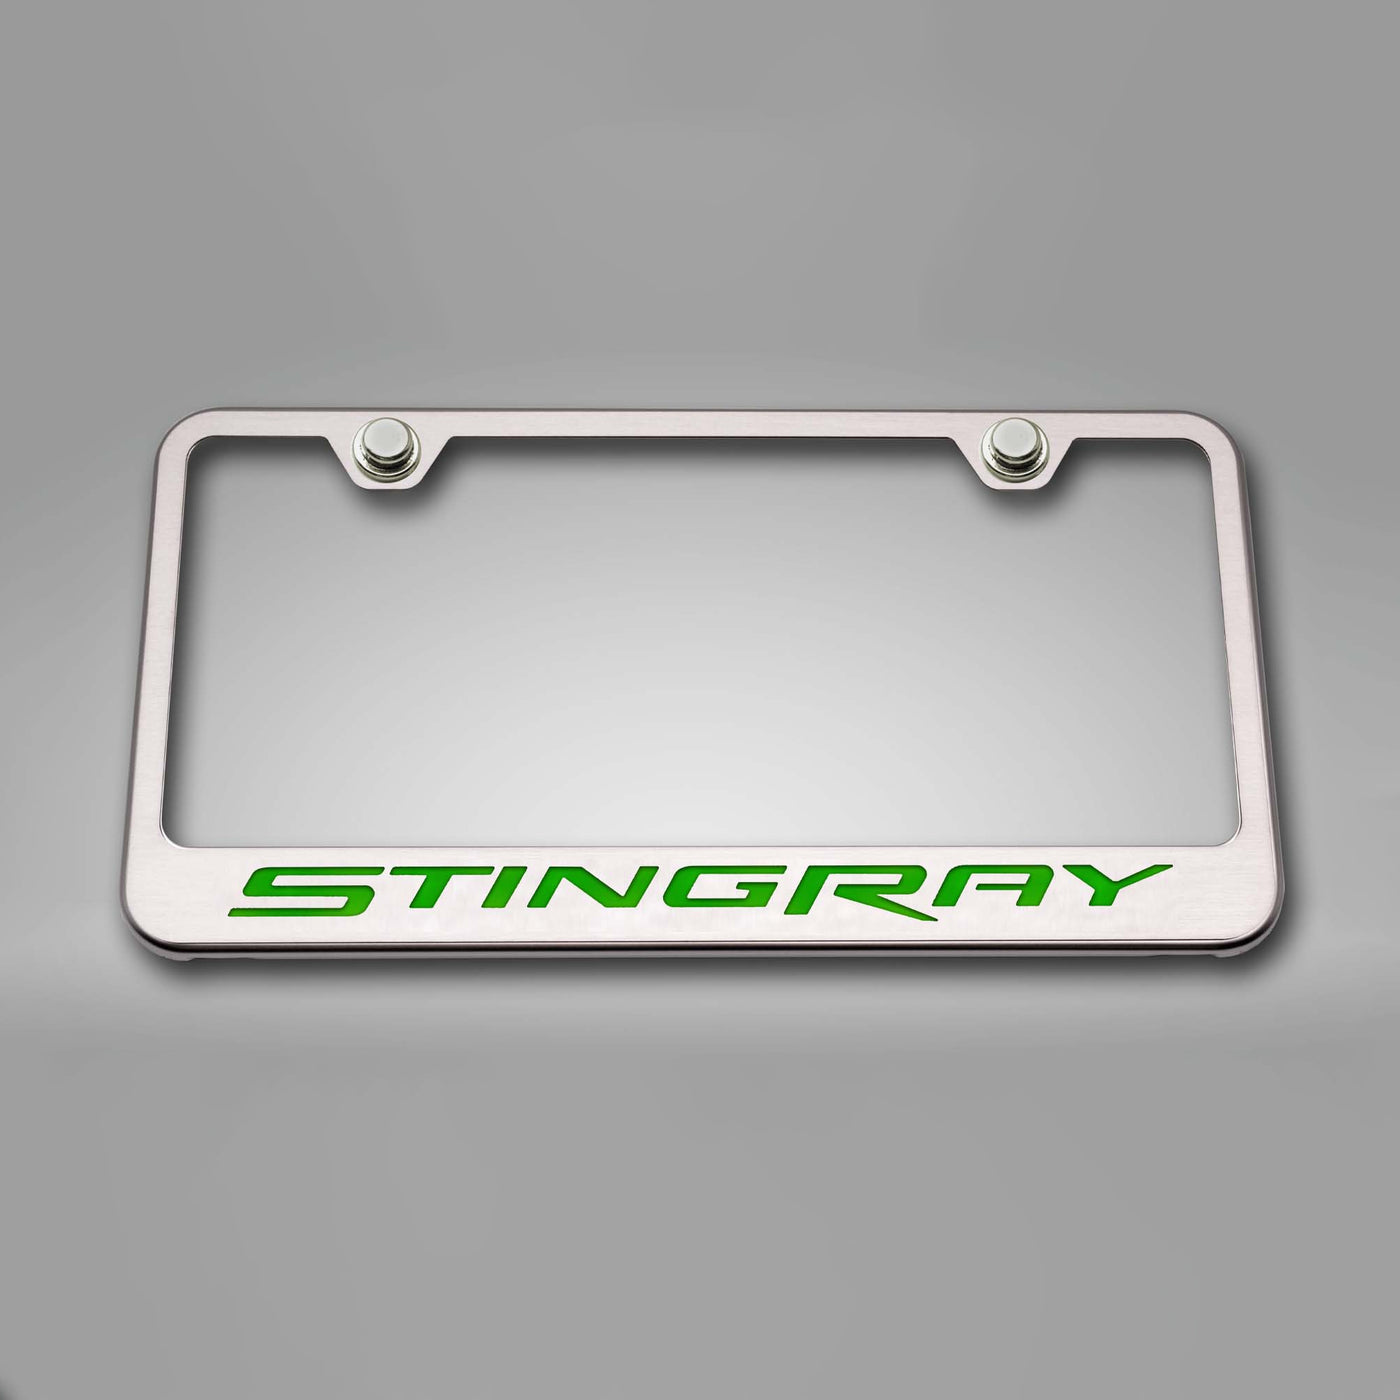 2014-2019 C7 Corvette - License Plate Frame STINGRAY Lettering  - Stainless Steel